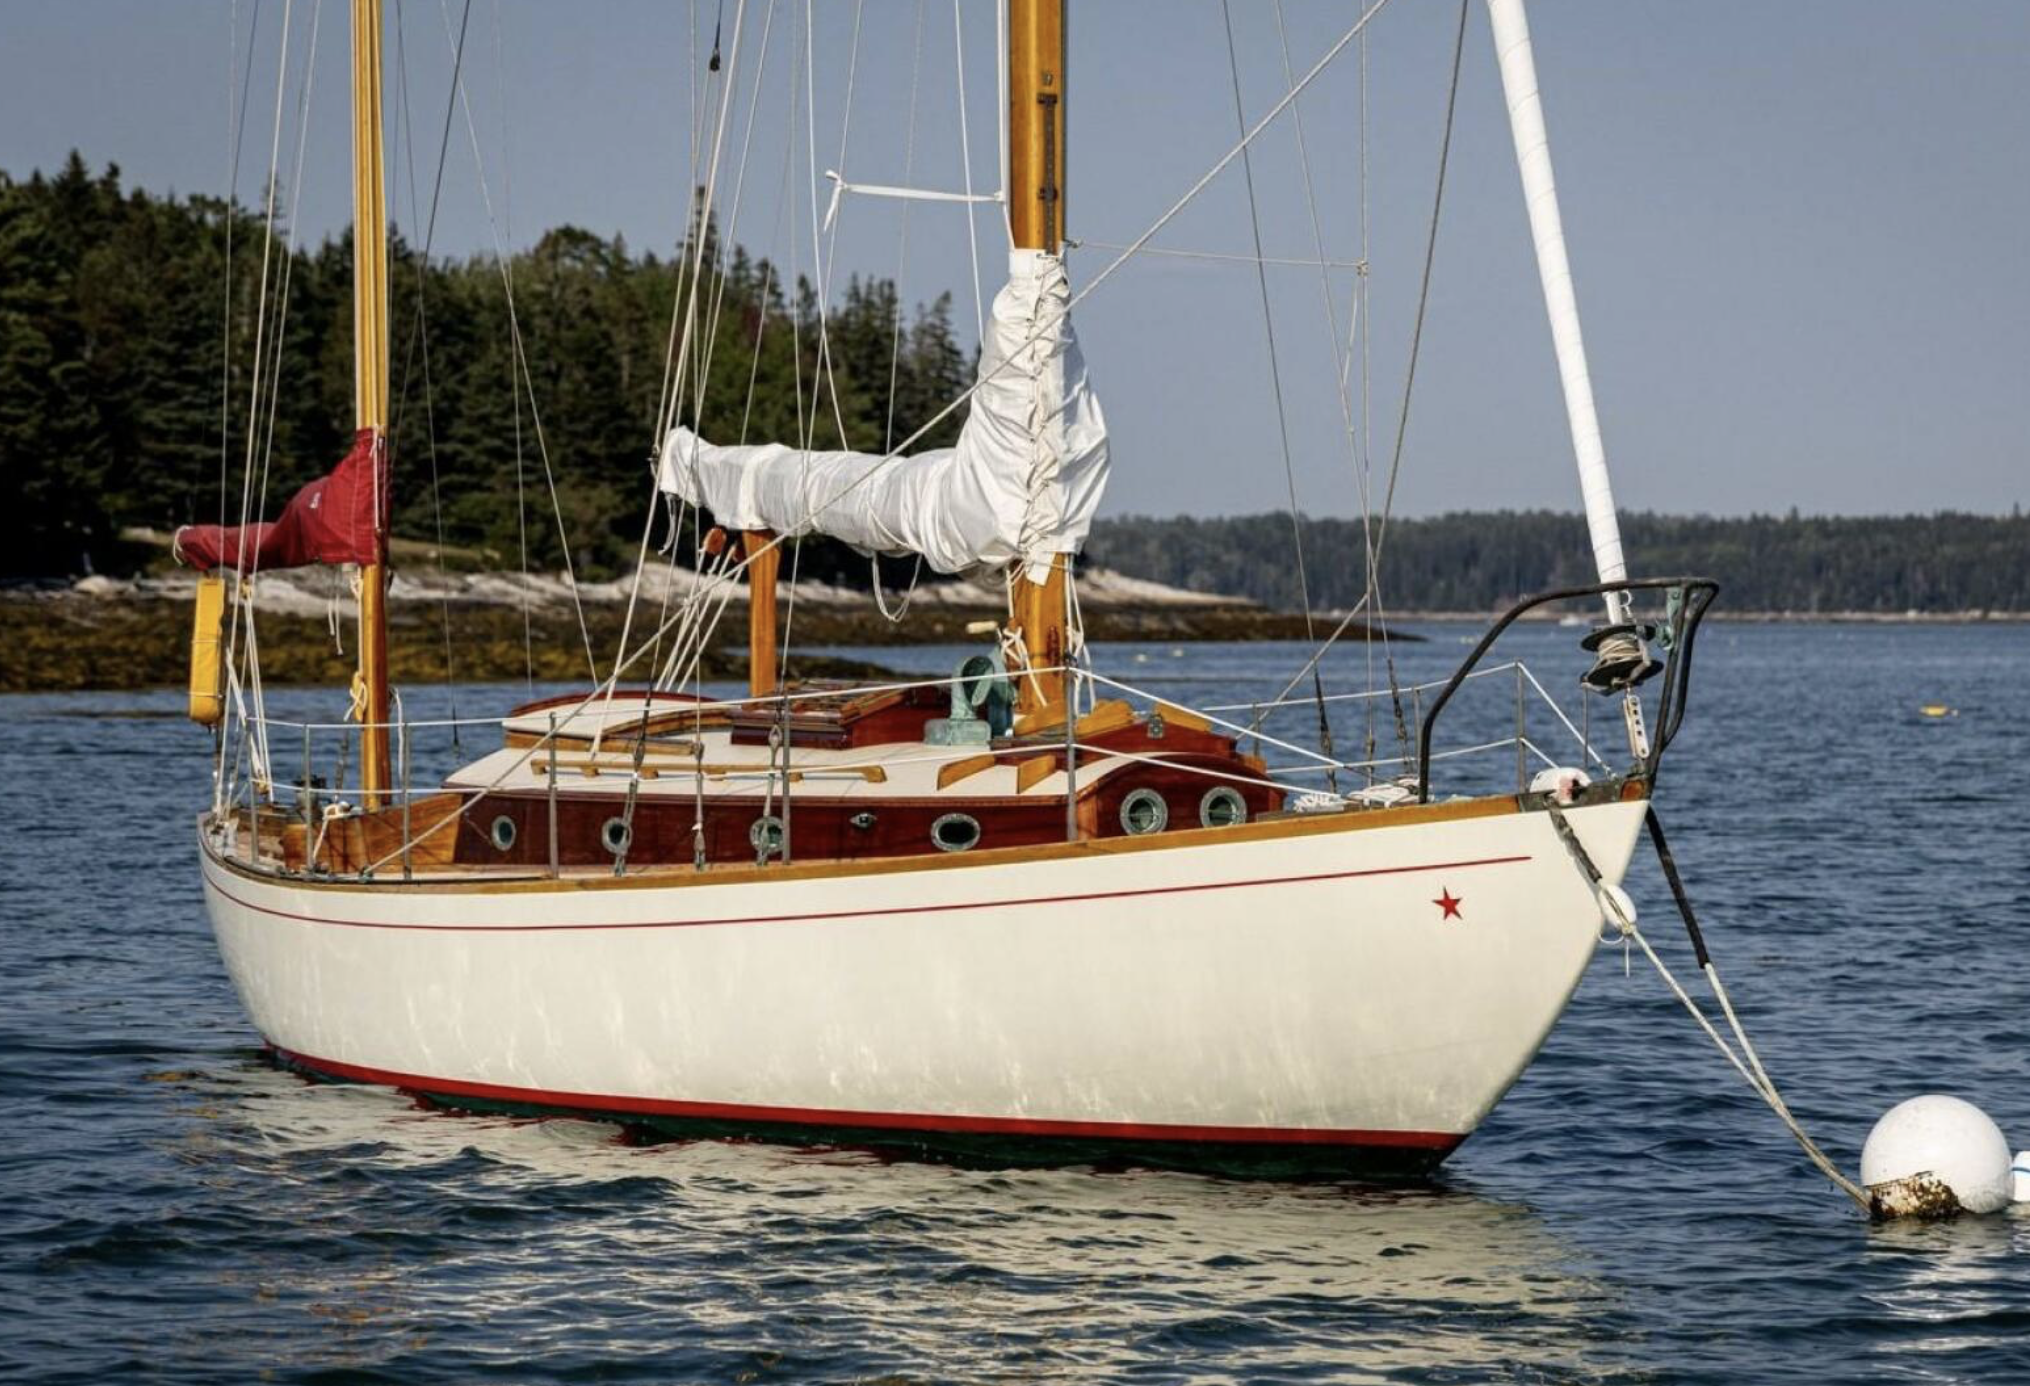 1963 Concordia 39 FABRILE. Asking $120,000. (Brooklin Boatyard brokerage, Maine. ) More information: